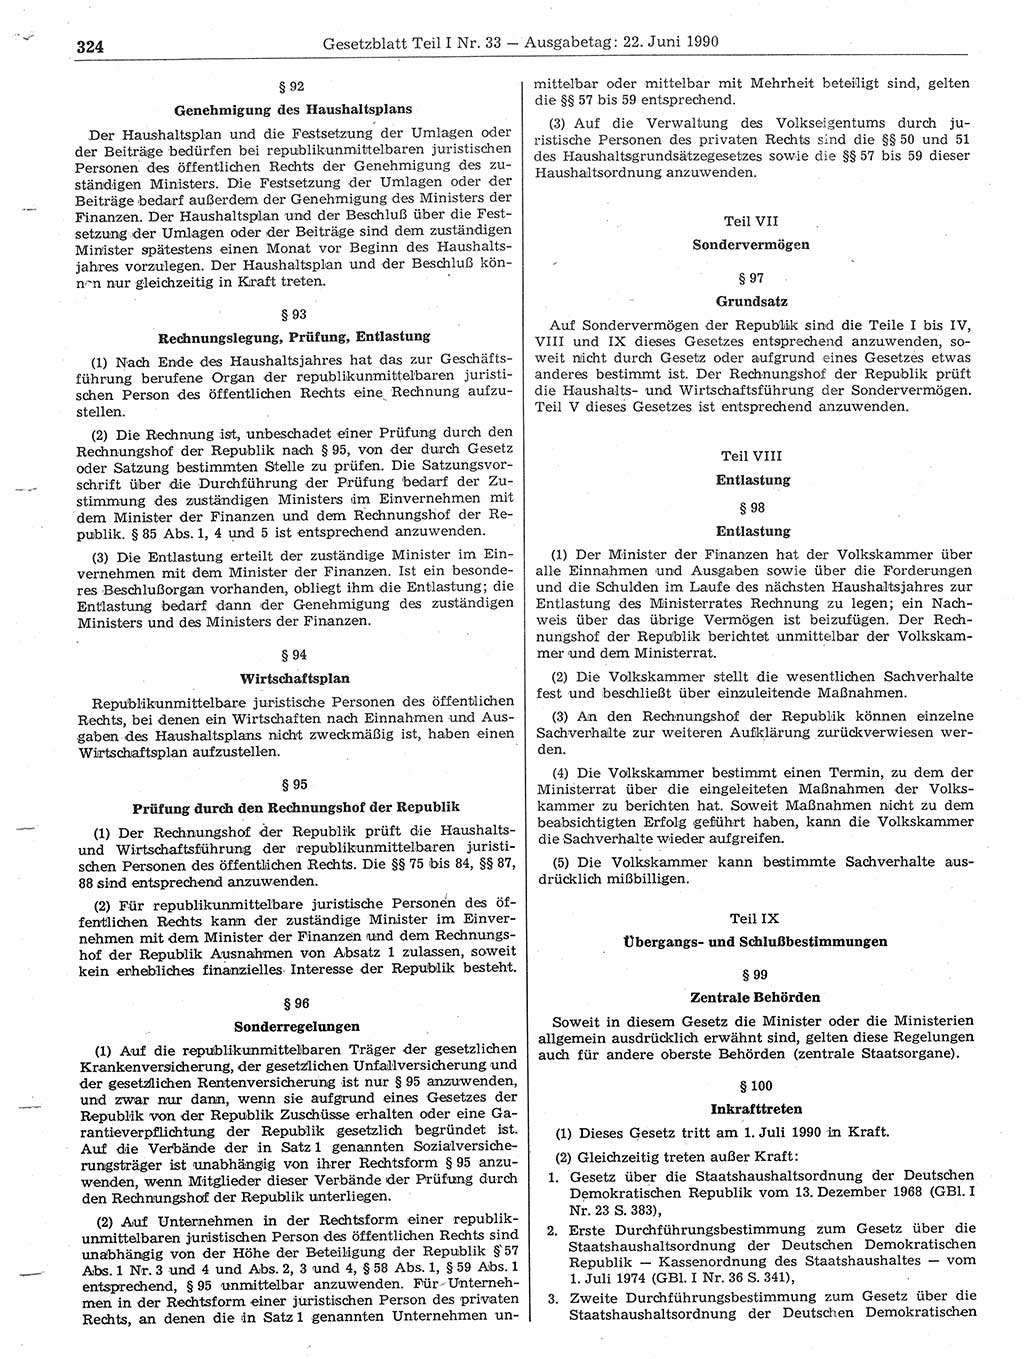 Gesetzblatt (GBl.) der Deutschen Demokratischen Republik (DDR) Teil Ⅰ 1990, Seite 324 (GBl. DDR Ⅰ 1990, S. 324)